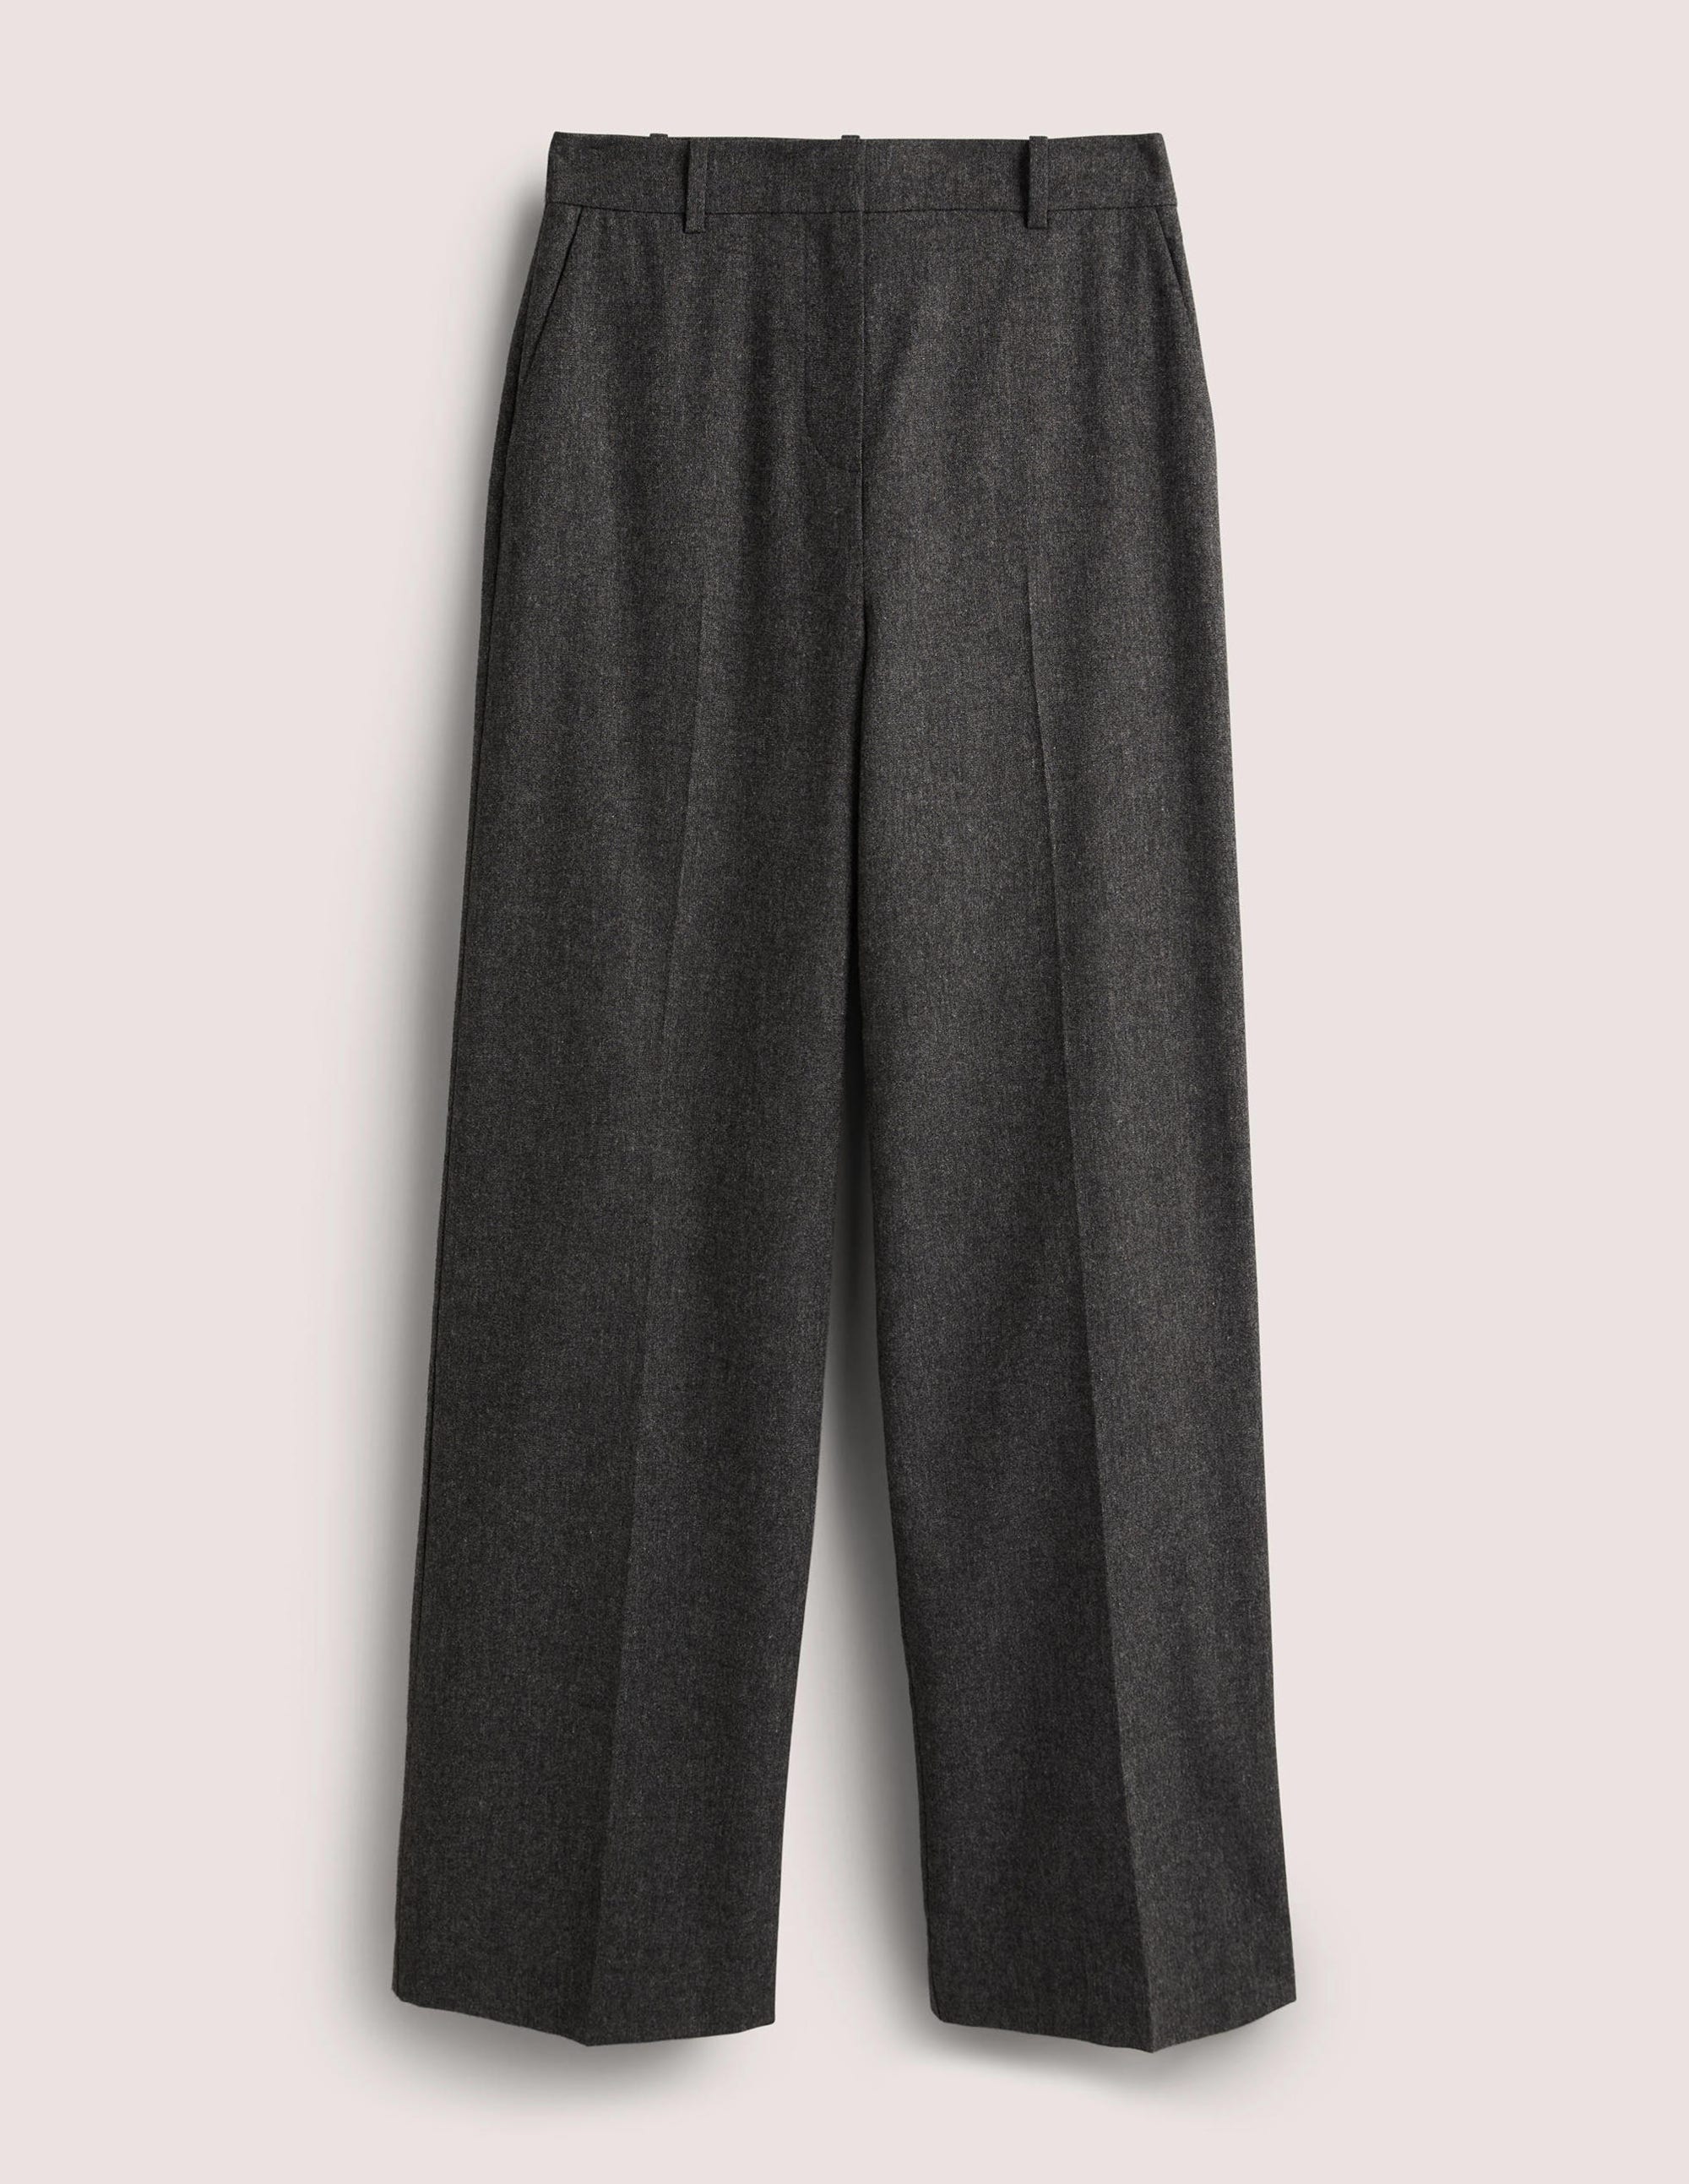 Boden Pantalon en laine gris anthracite style d\u2019affaires Mode Pantalons Pantalons en laine 